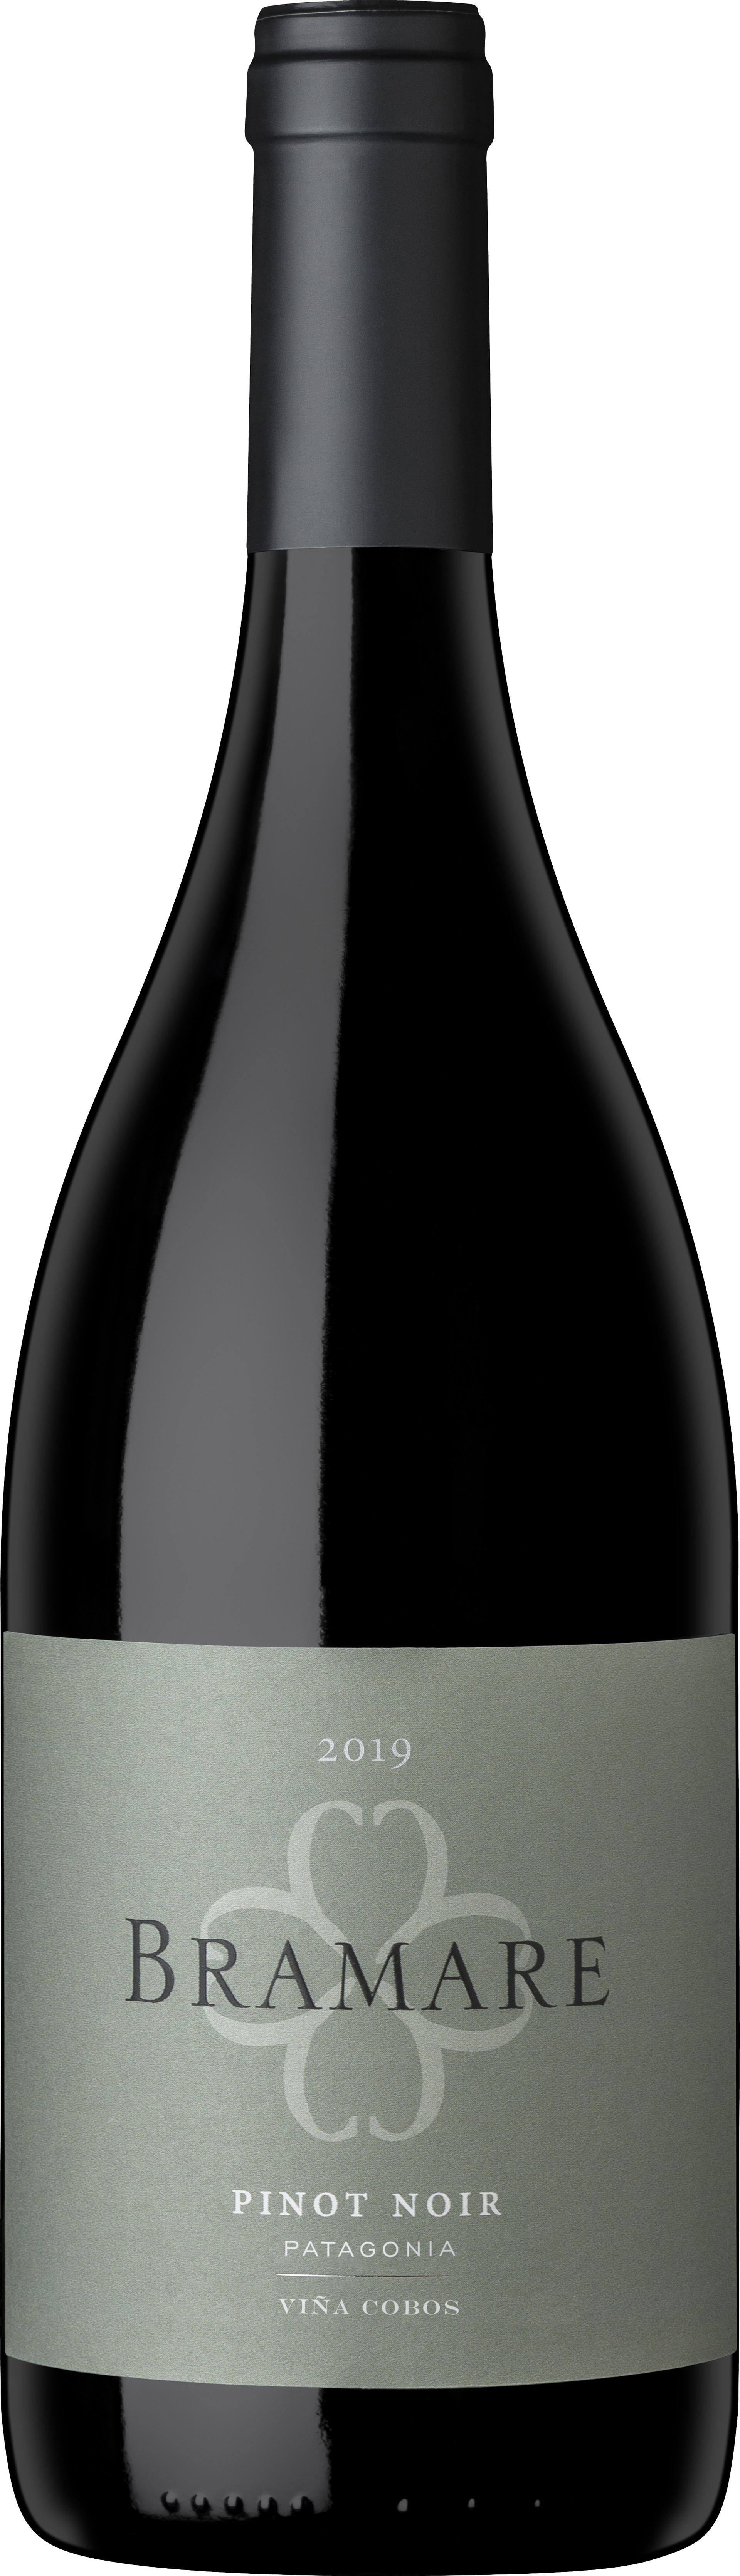  Bramare Pinot Noir Patagonia 2019